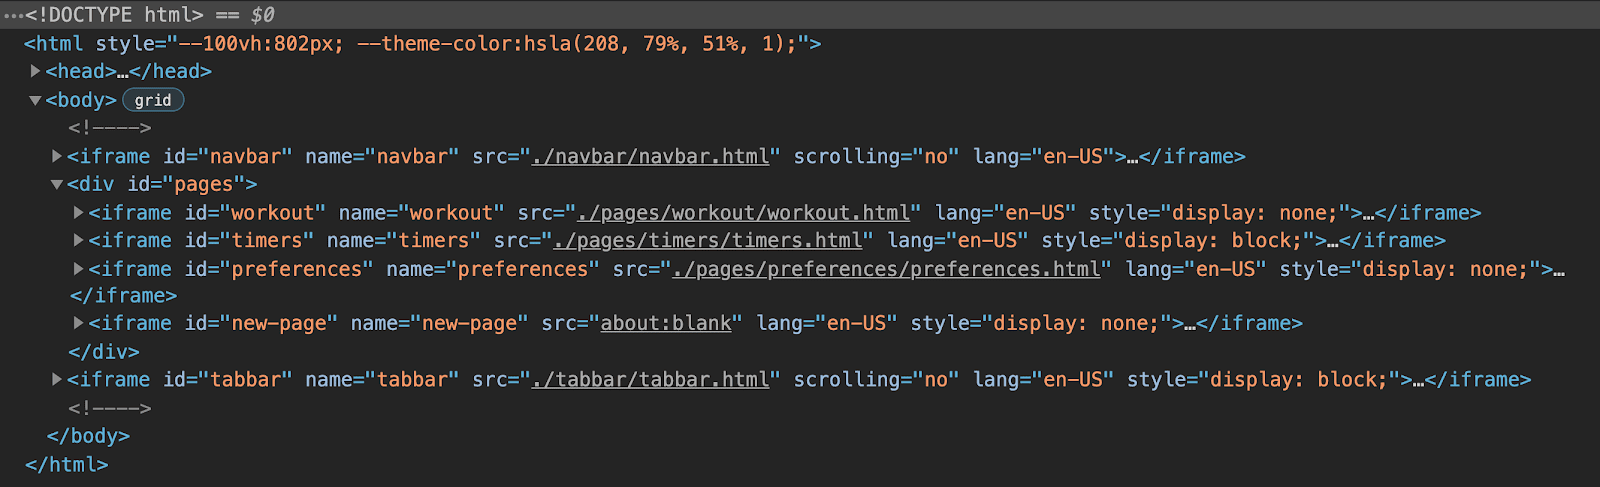 Widok w Narzędziach deweloperskich w Chrome przedstawiający strukturę HTML aplikacji z widocznym 6 elementami iframe: jednym dla paska nawigacyjnego, jednym dla paska kart i 3 zgrupowanymi elementami dla każdej strony aplikacji, z końcowym zastępczym elementem iframe dla stron dynamicznych.